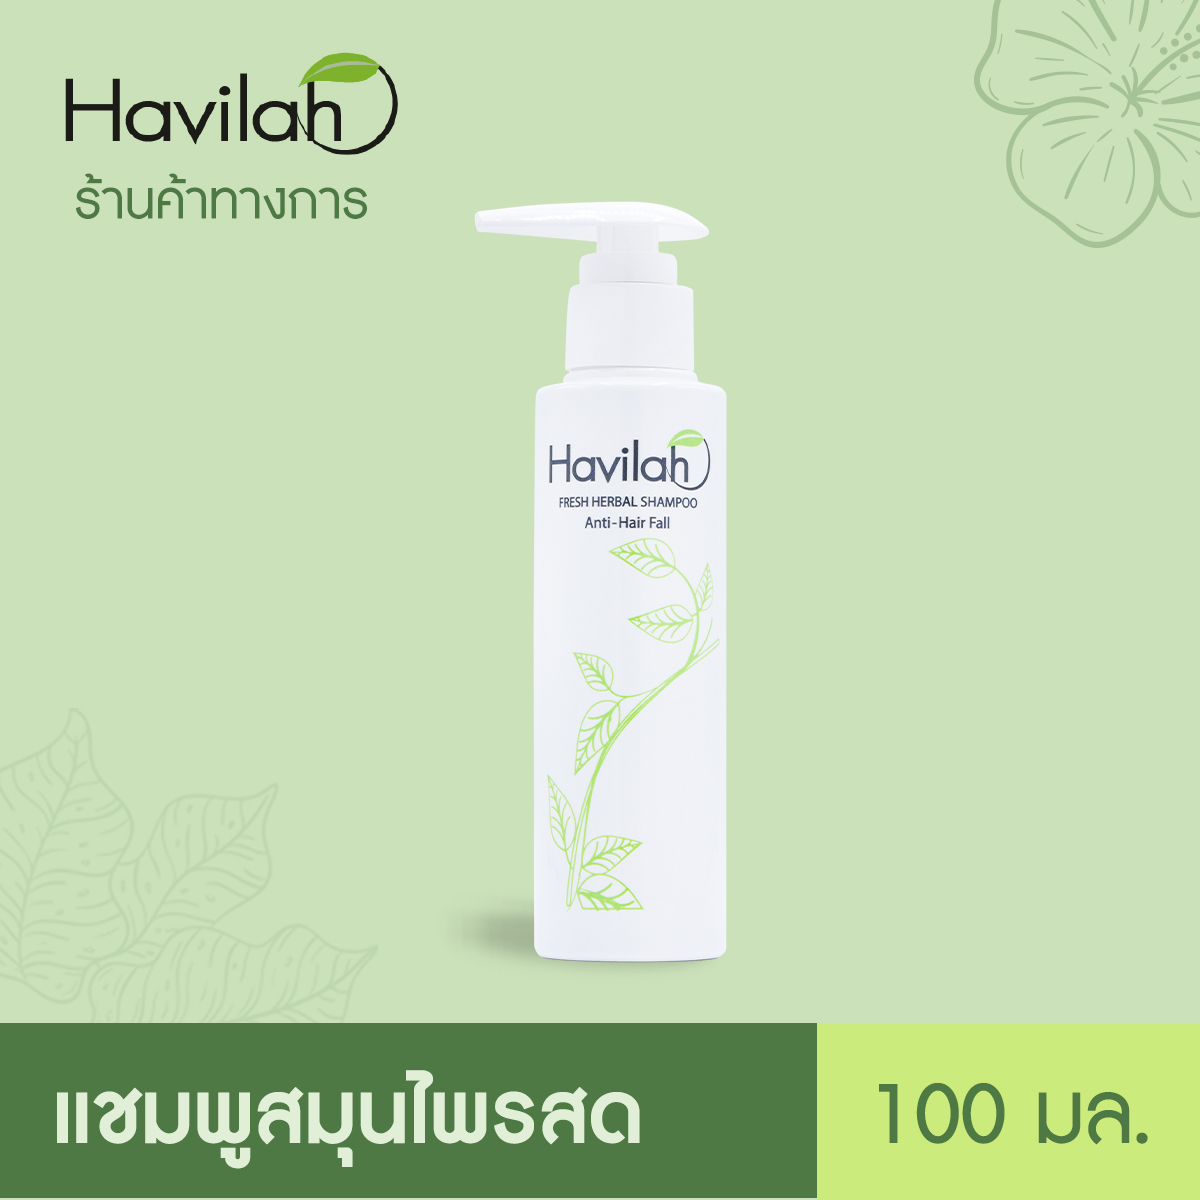 ฮาวิล่าห์ (Havilah) แชมพูแก้ผมร่วง สมุนไพรสด 100 มล. x1 l Havilah Fresh Herbal Shampoo Anti-Hair Fall 100 ml. (ส่งฟรี)